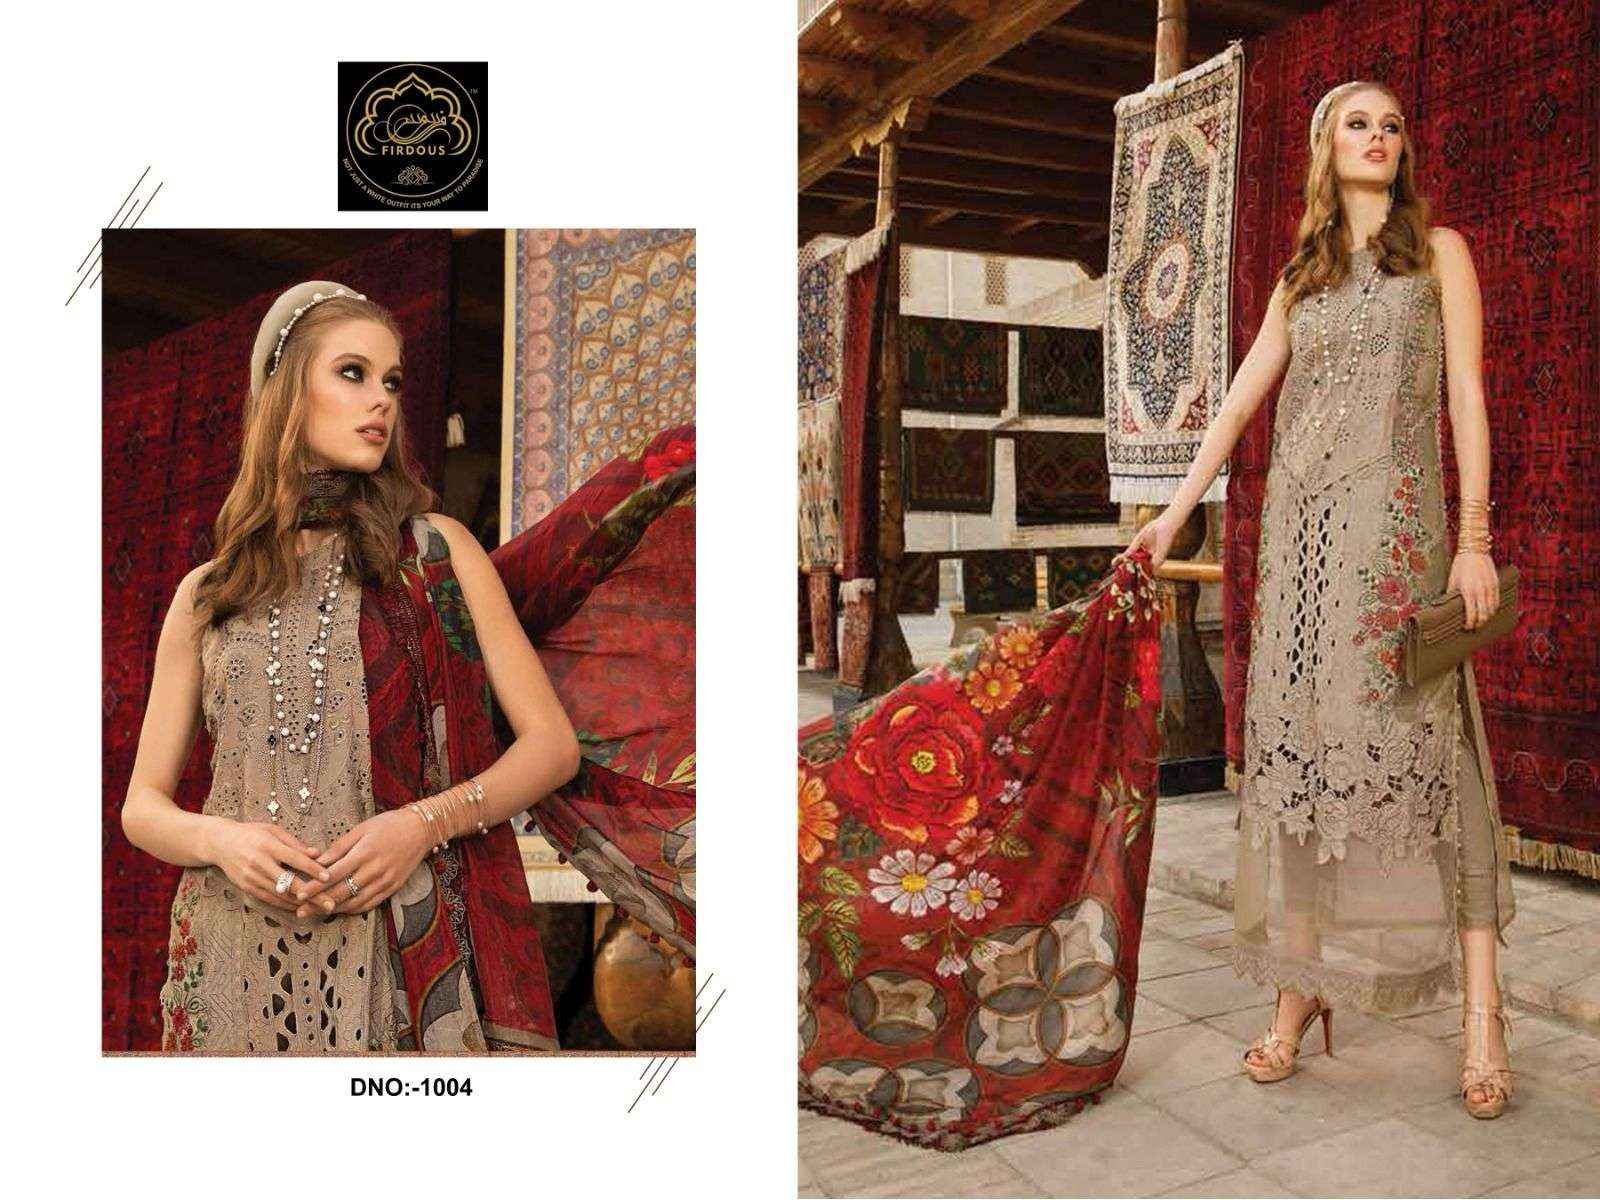 Firdous Adan Libas Cotton Dress Material 4 pcs Catalogue